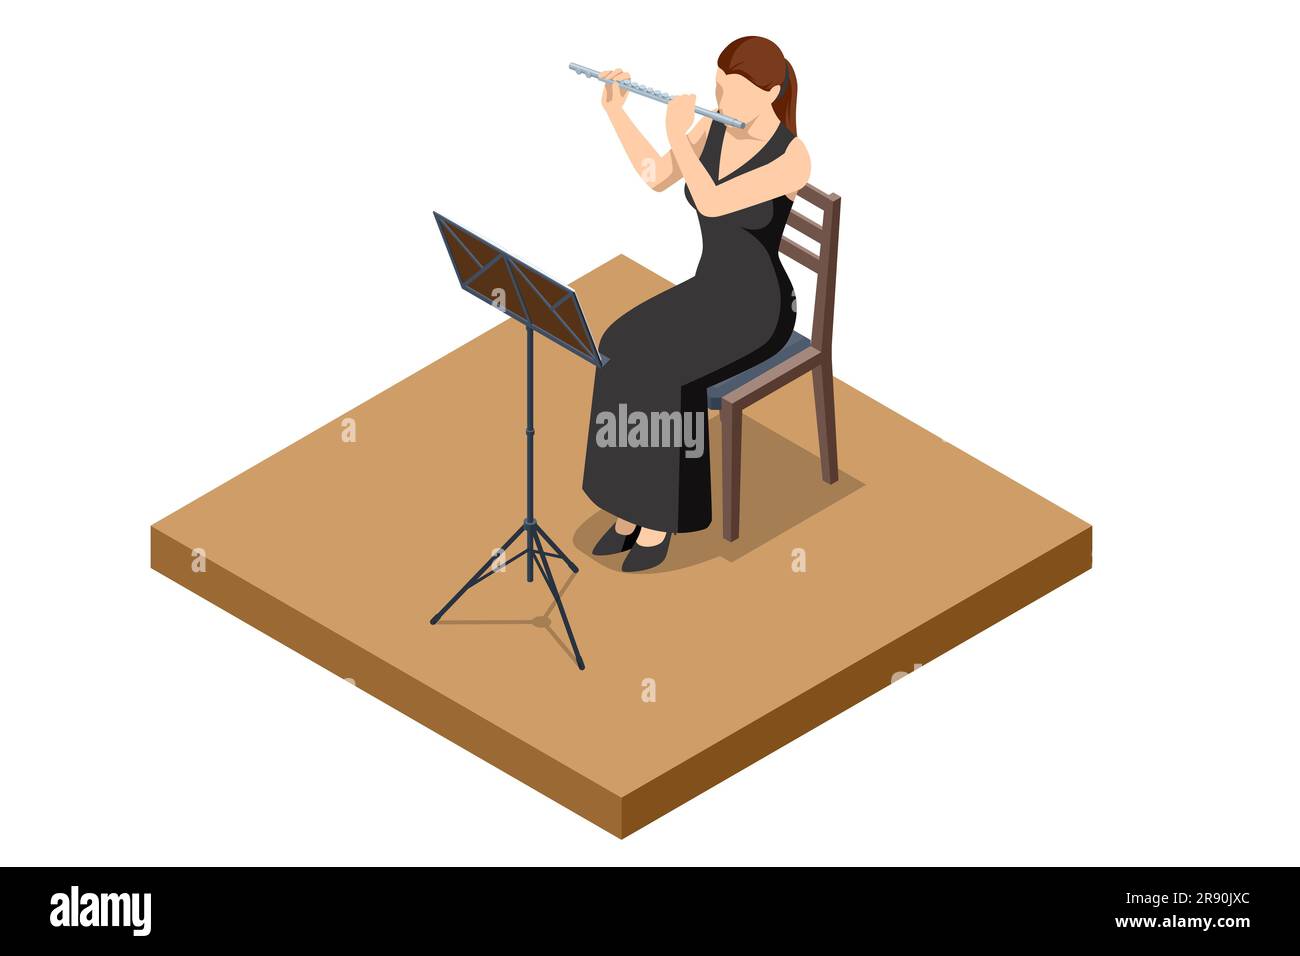 La femme isométrique joue la flûte. Instrument orchestral à vent de flûte Illustration de Vecteur